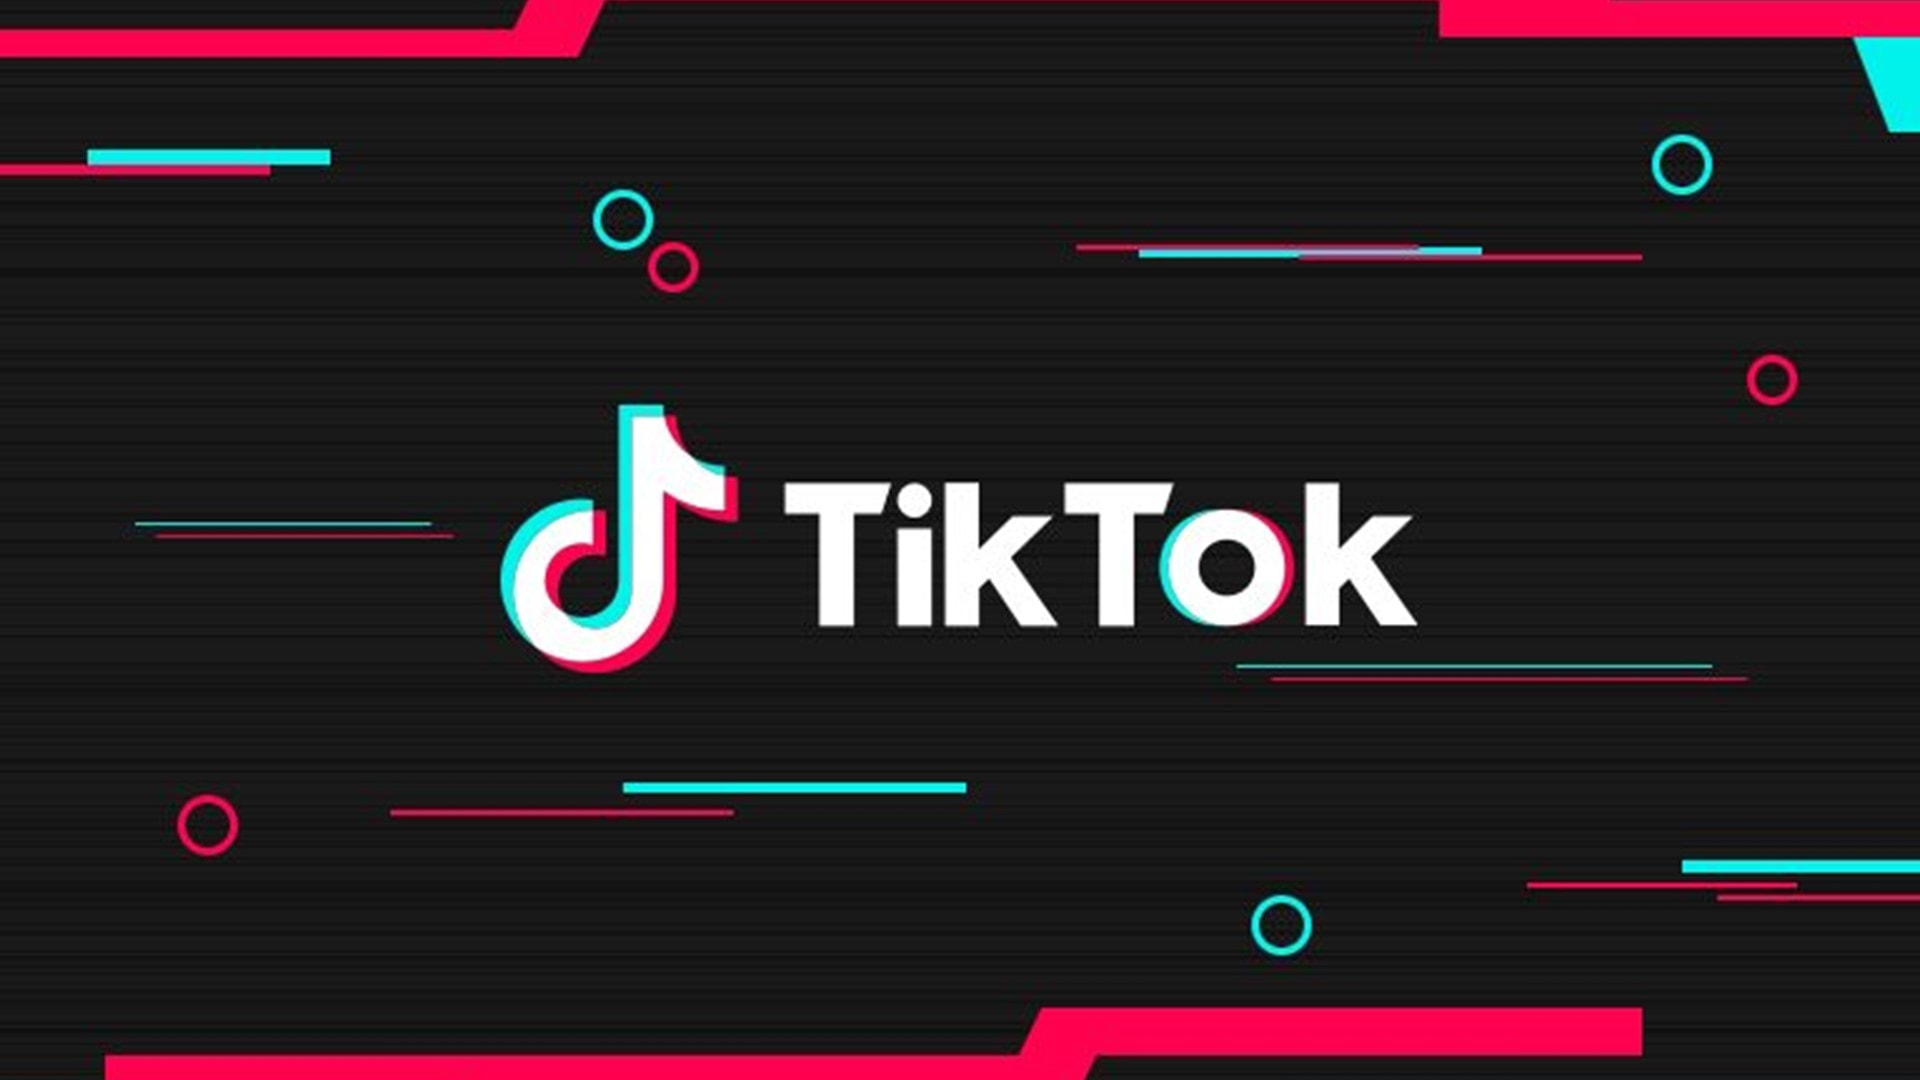 TikTok Songs Wallpaper - EnJpg